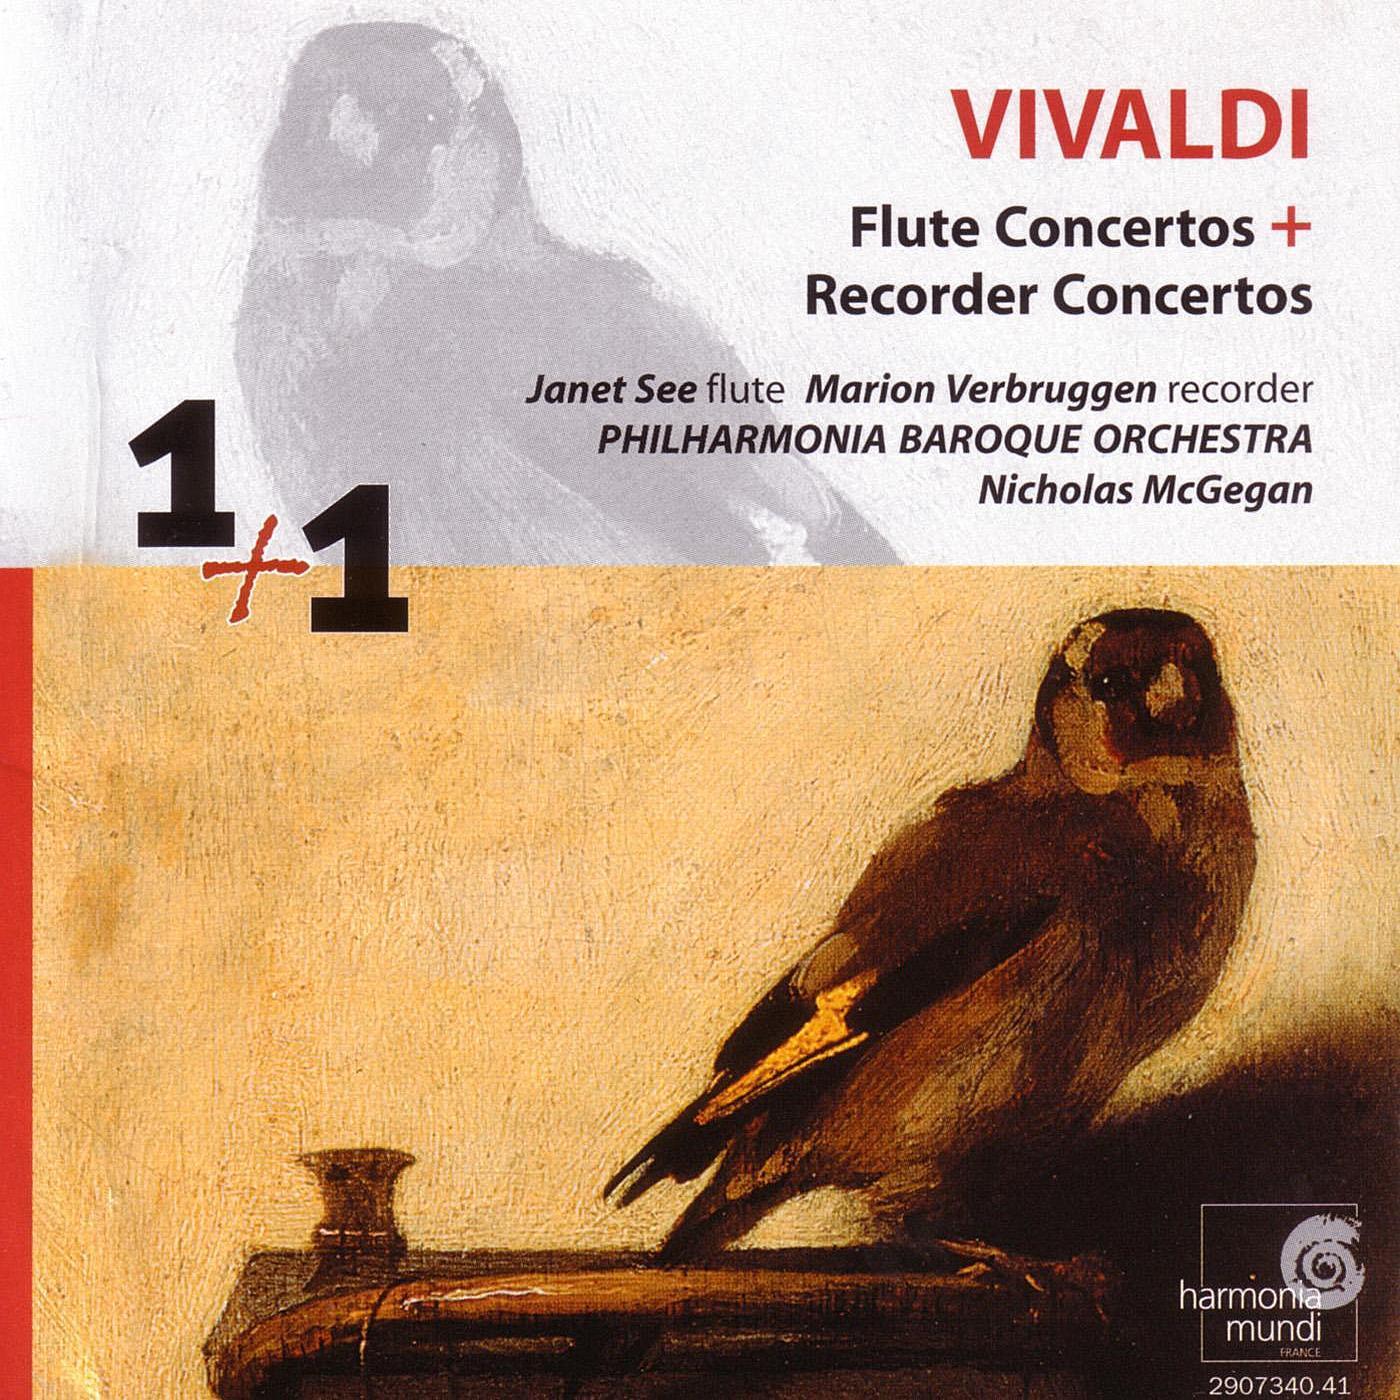 Flute Concerto in G Major, Rv 438: Allegro molto - Largo - Allegro